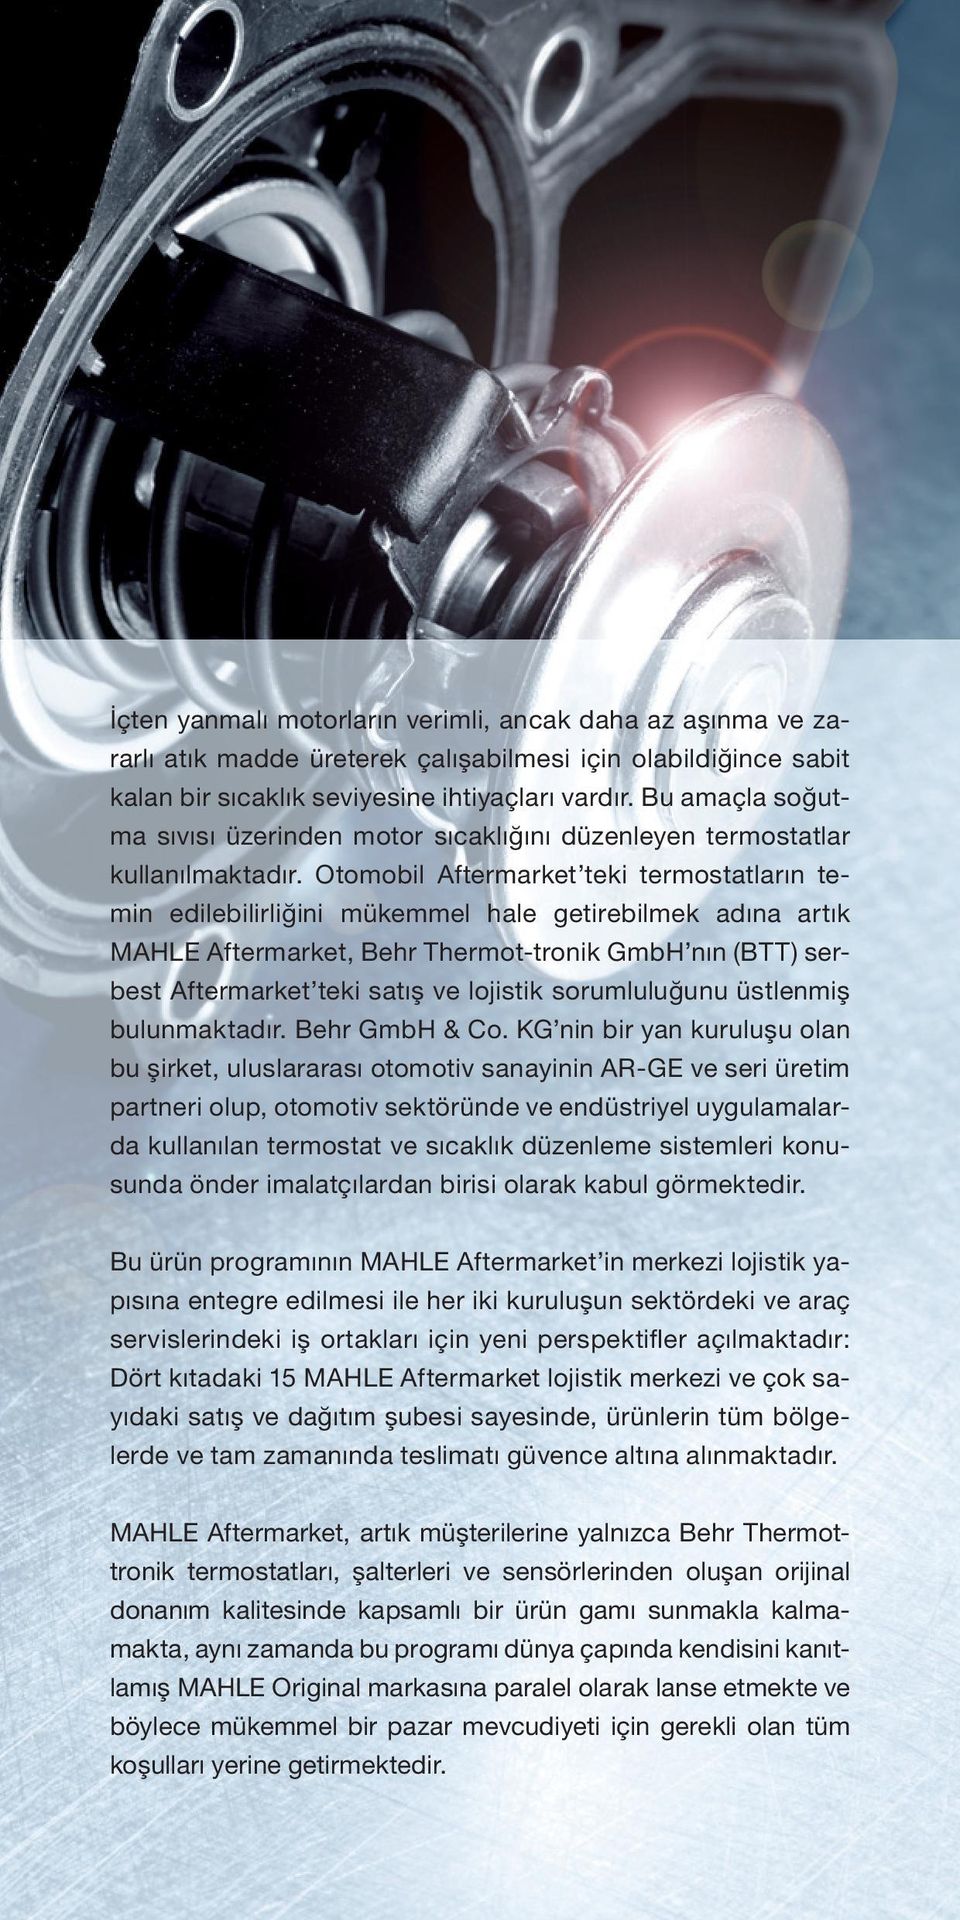 Otomobil Aftermarket teki termostatların temin edilebilirliğini mükemmel hale getirebilmek adına artık MAHLE Aftermarket, Behr Thermot-tronik GmbH nın (BTT) serbest Aftermarket teki satış ve lojistik